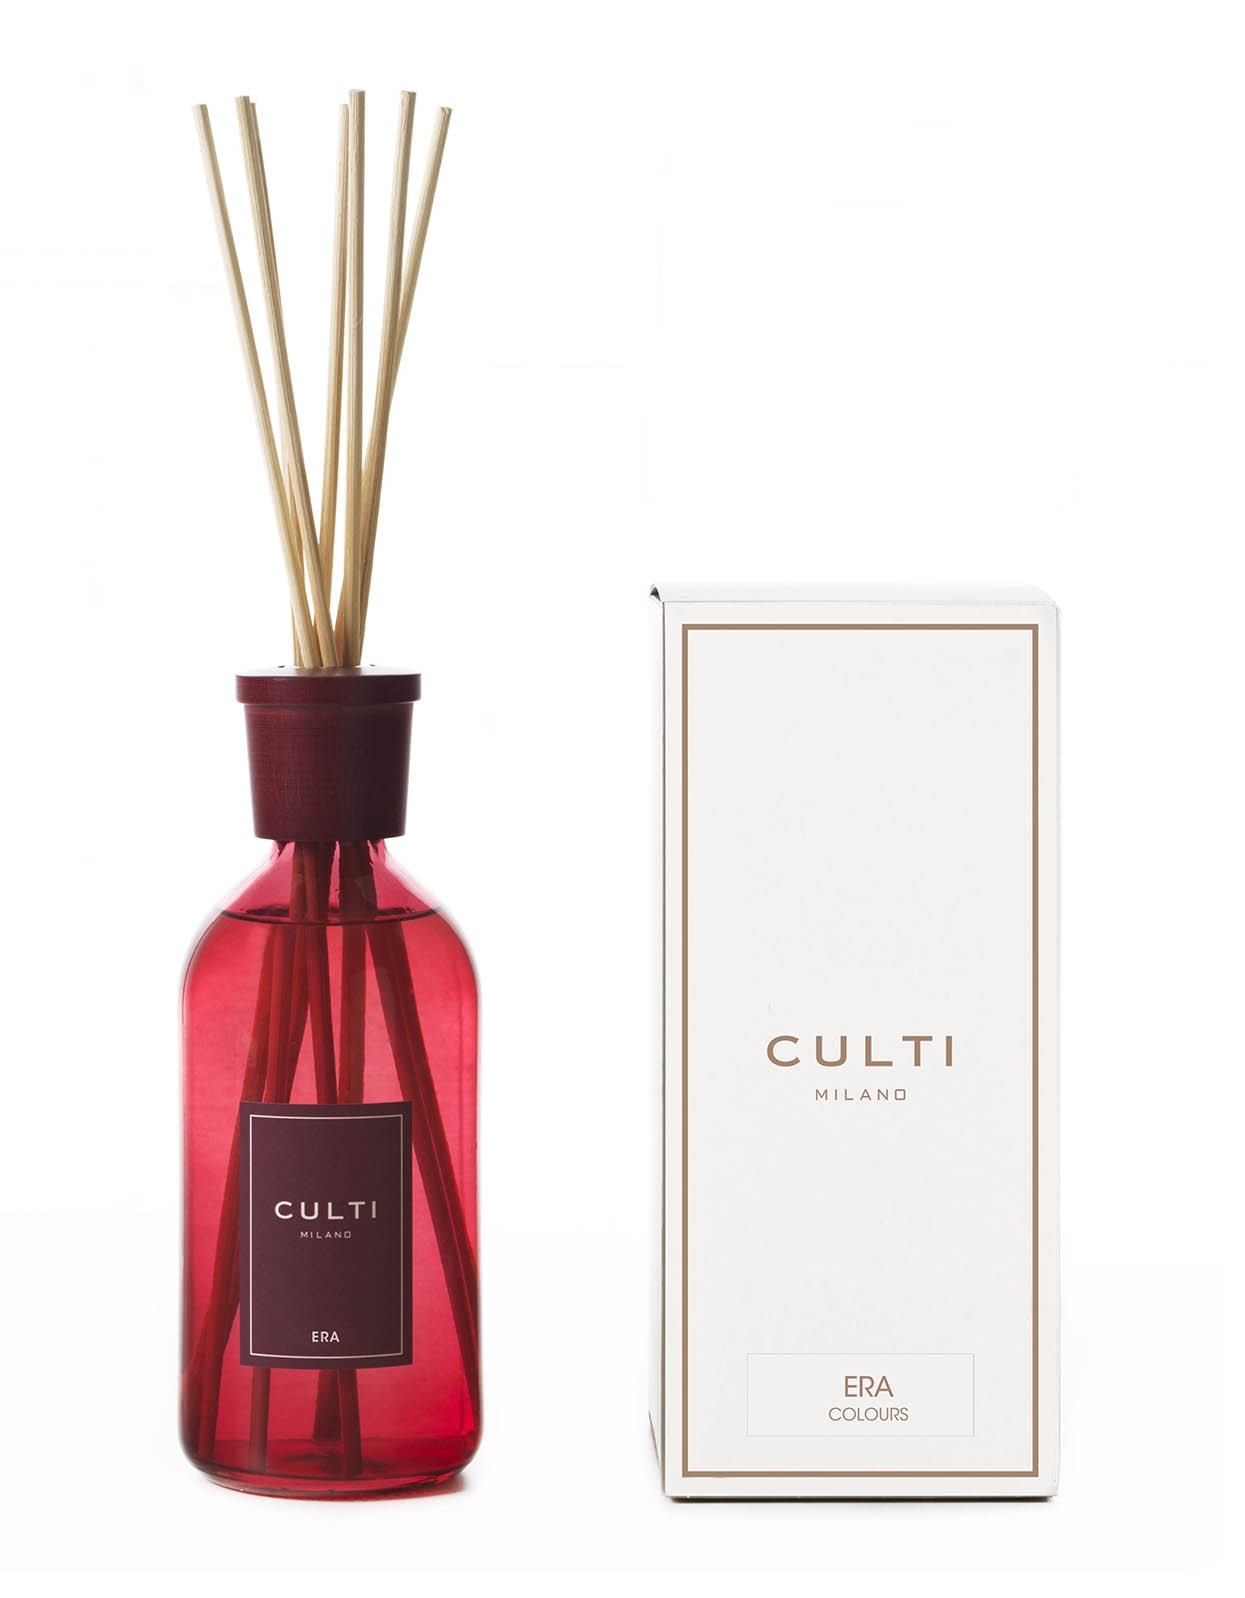 Culti Milano - Diffusore Color 500 ml - Era - Profumi d'Ambiente - Rosso -  Fragranze - Luxury - Avvenice